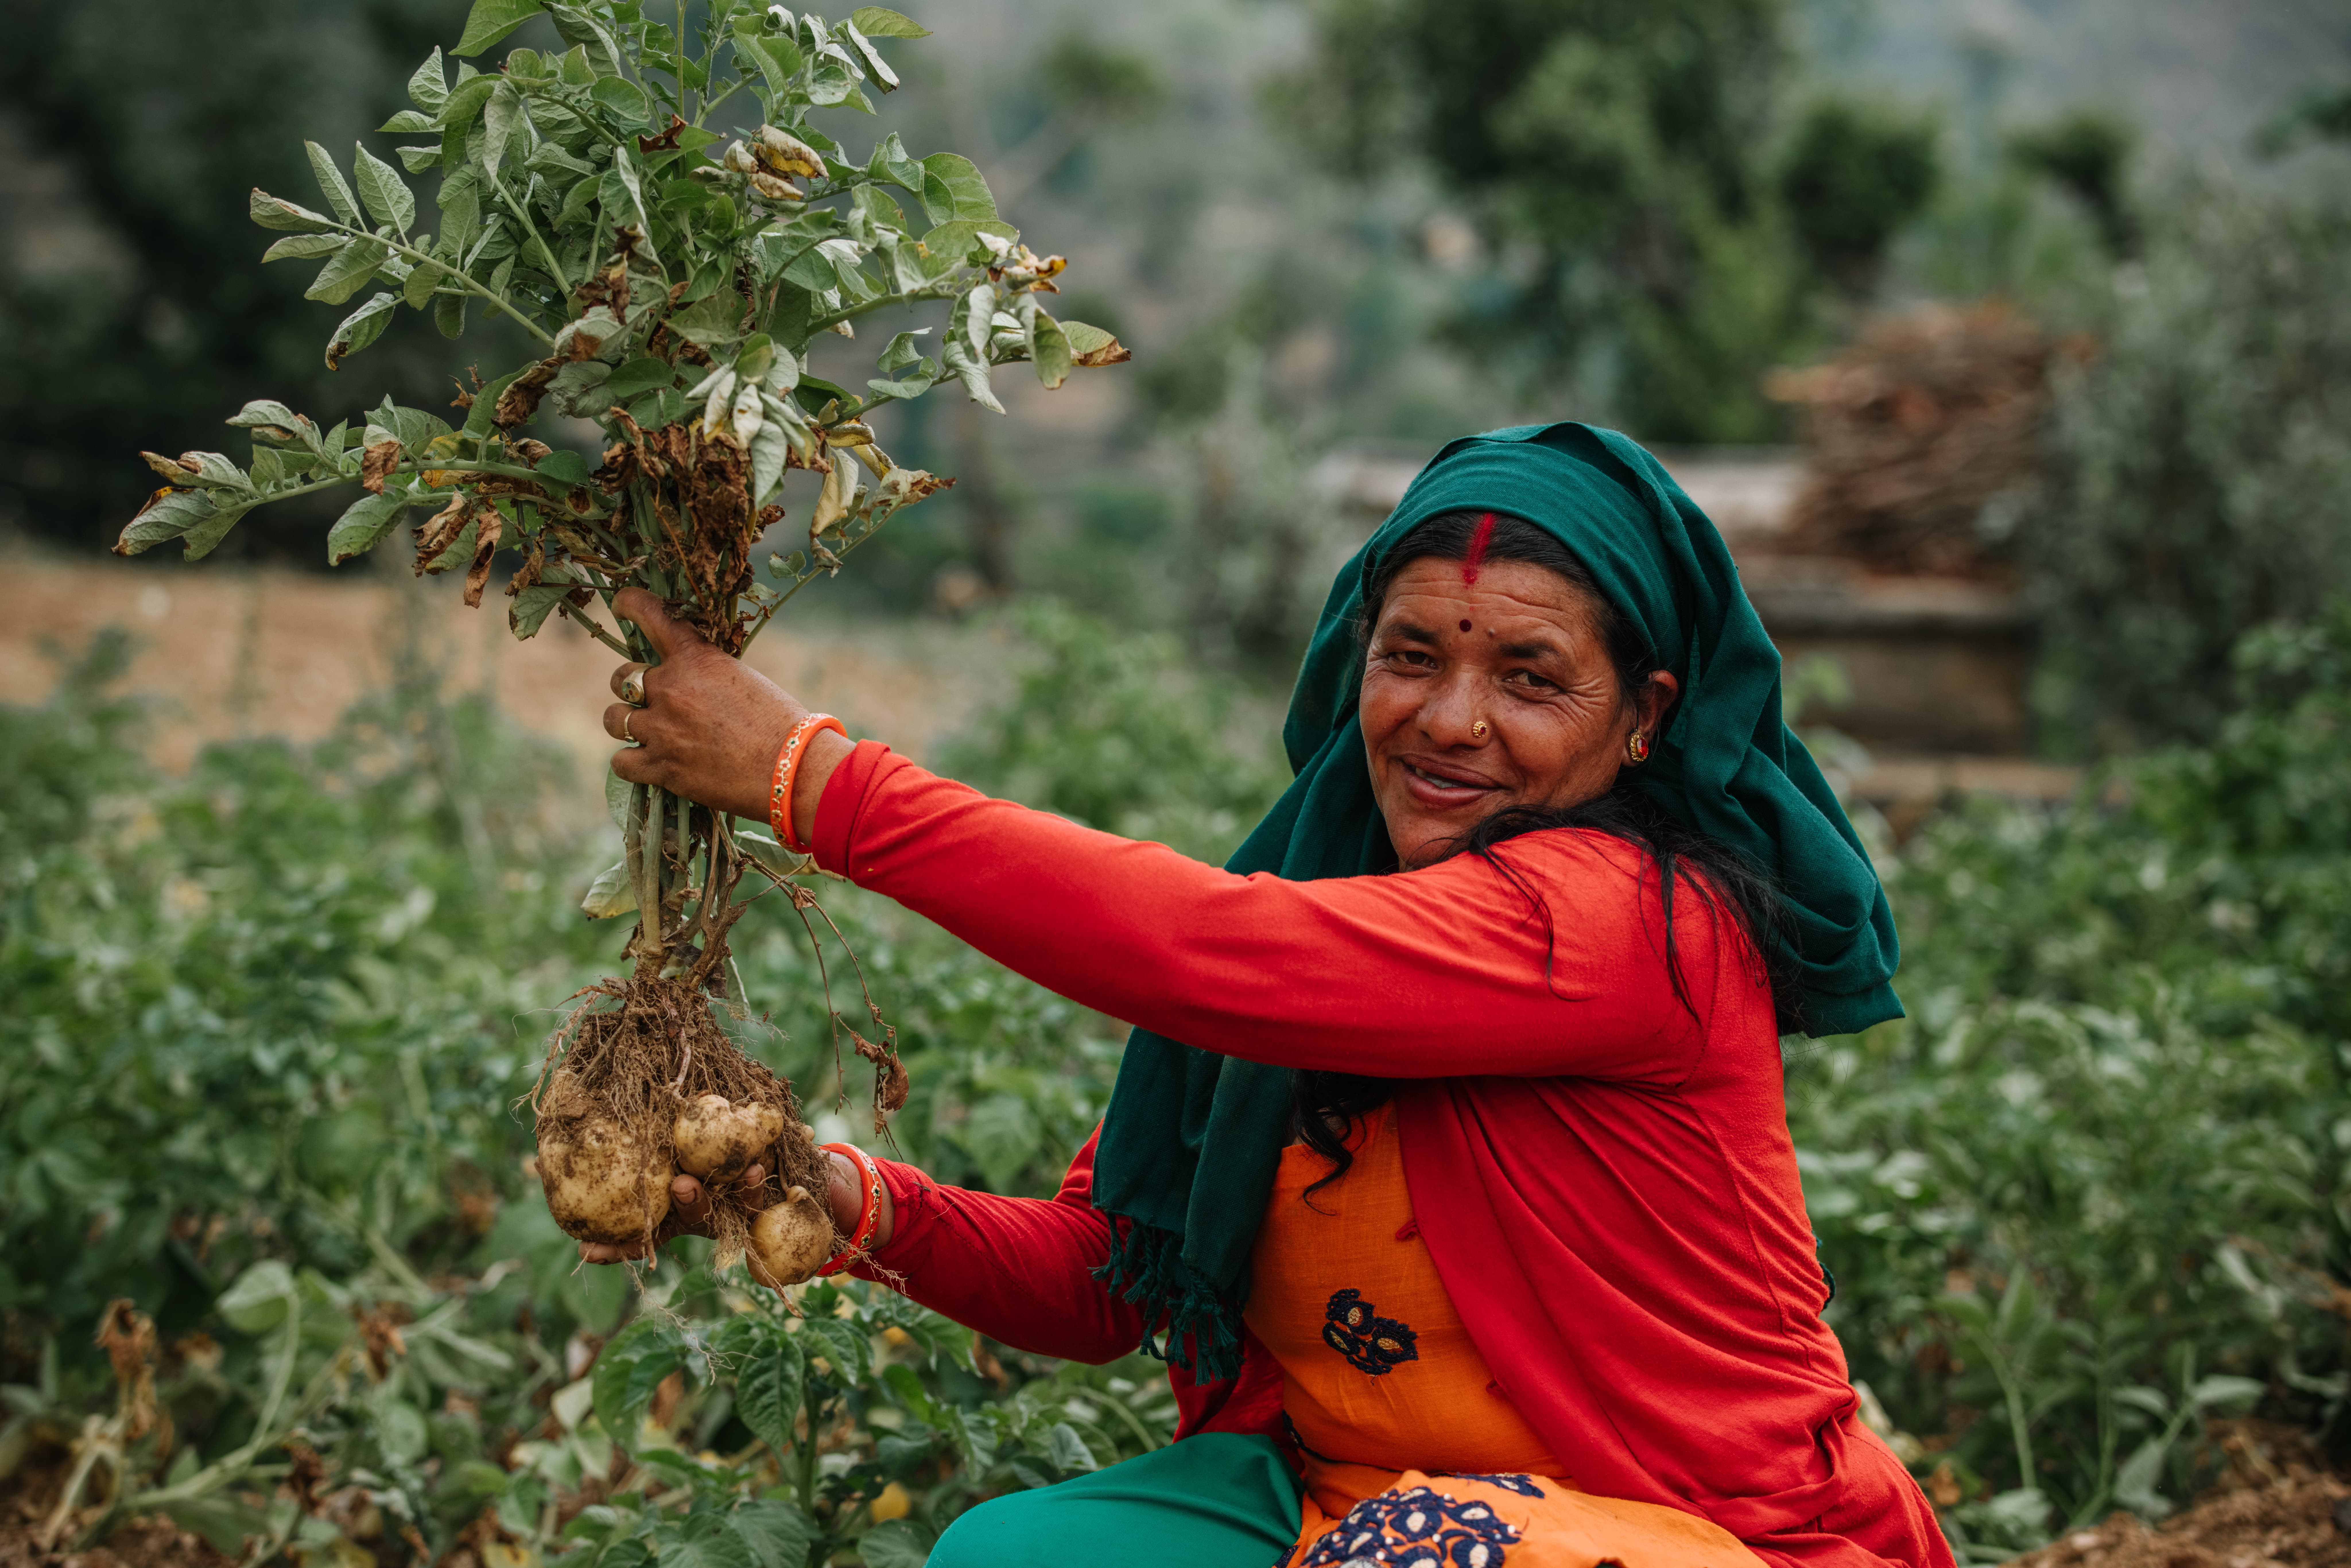 气候变化影响尼泊尔山区小农的生计，乐施会建议当地村民改种一些用水较少及易于储存的农作物。图片中的Haru改种了本地品种的马铃薯，并改良了种植方法，随后的产量有所增加。